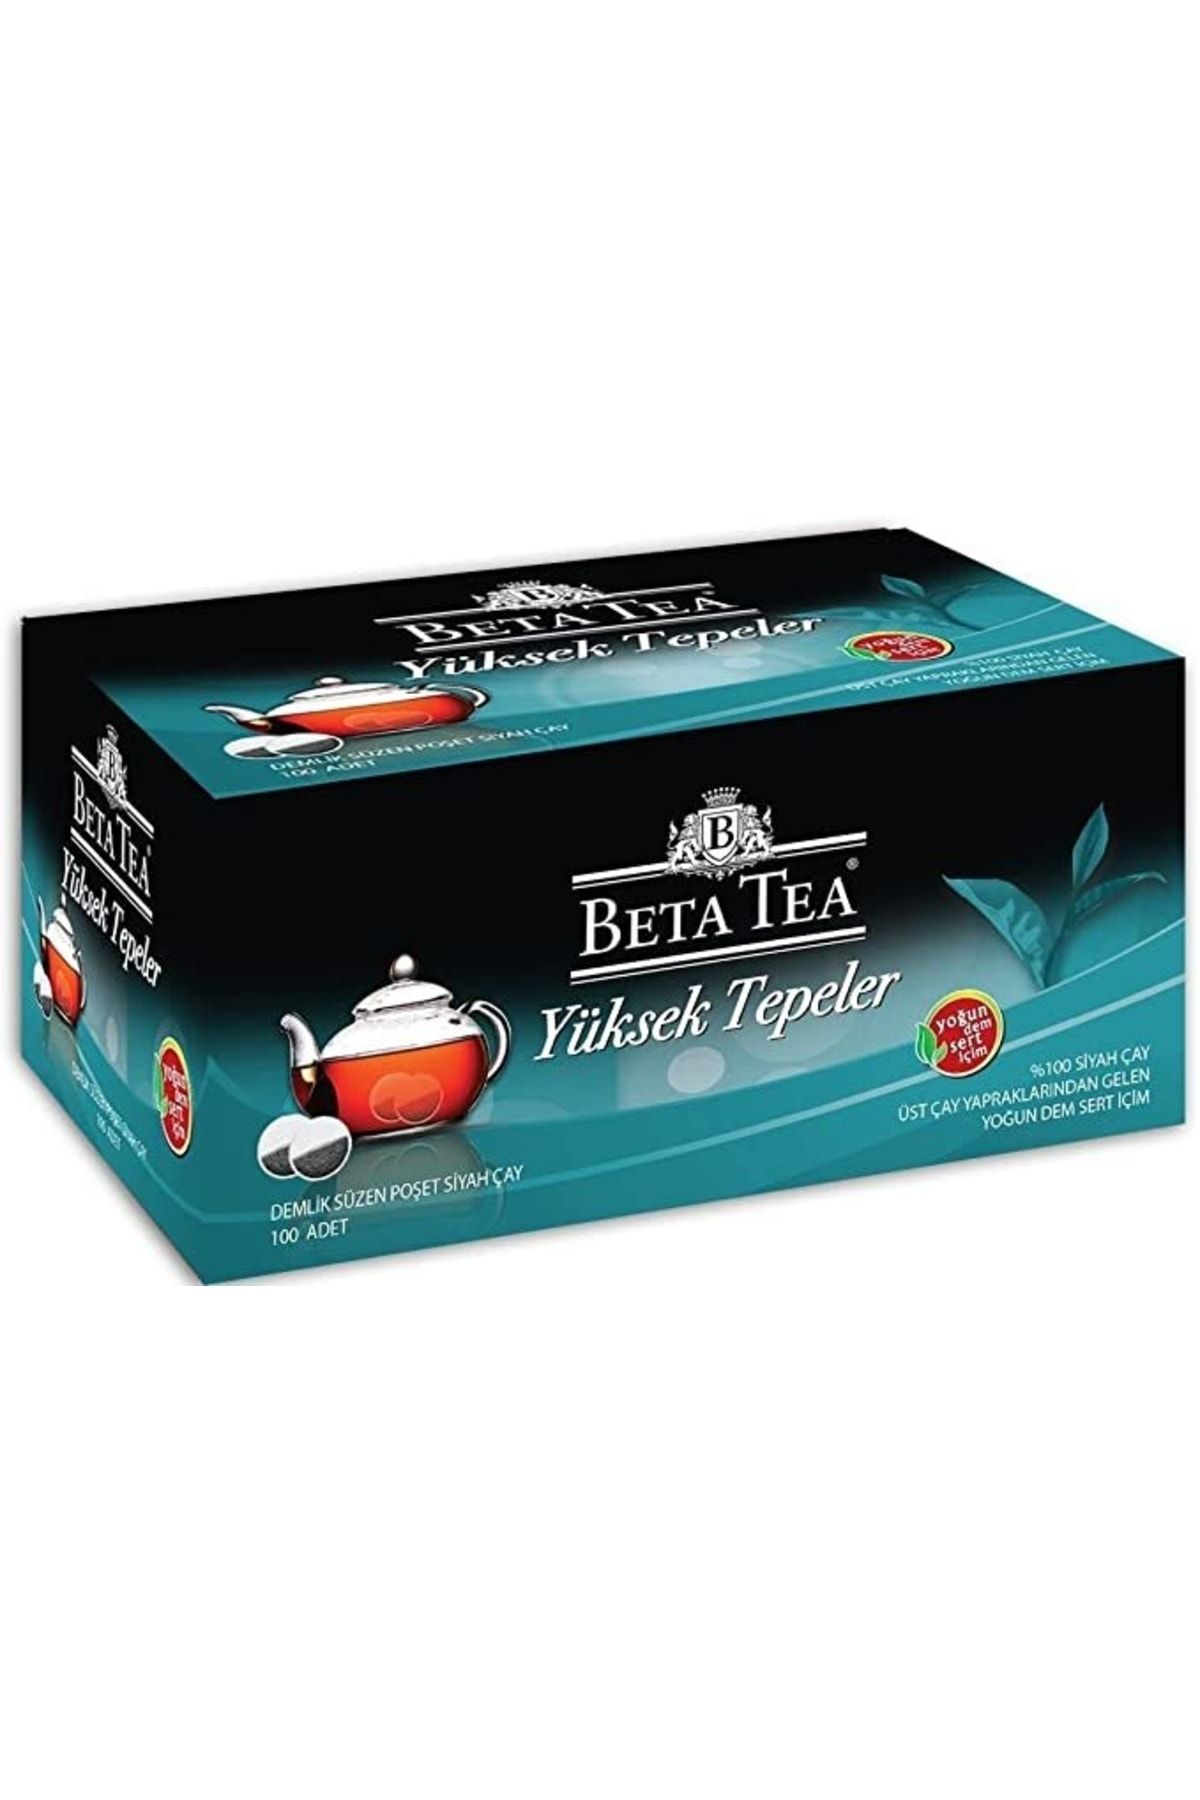 Beta Tea Yüksek Tepeler Demlik Poşet Çay 100x3,2 Gr